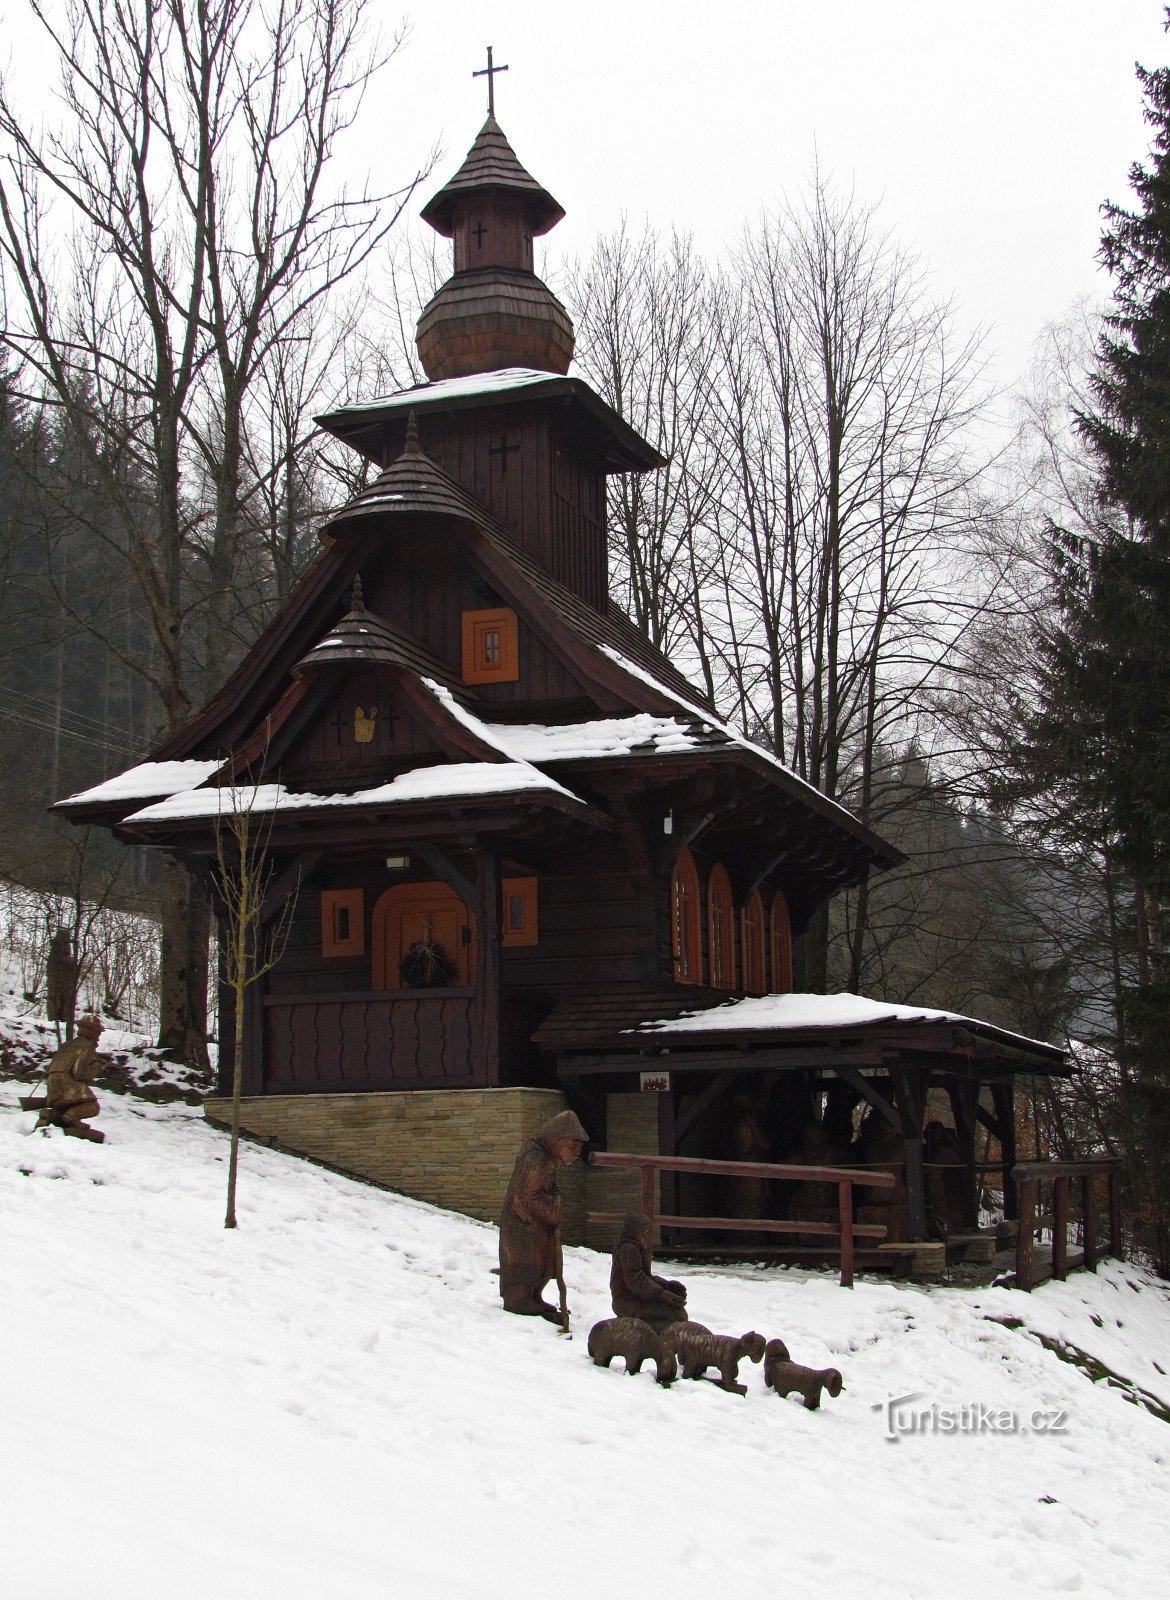 Velké Karlovice - Pyhän Hubertin ja elämänpuun kappeli II